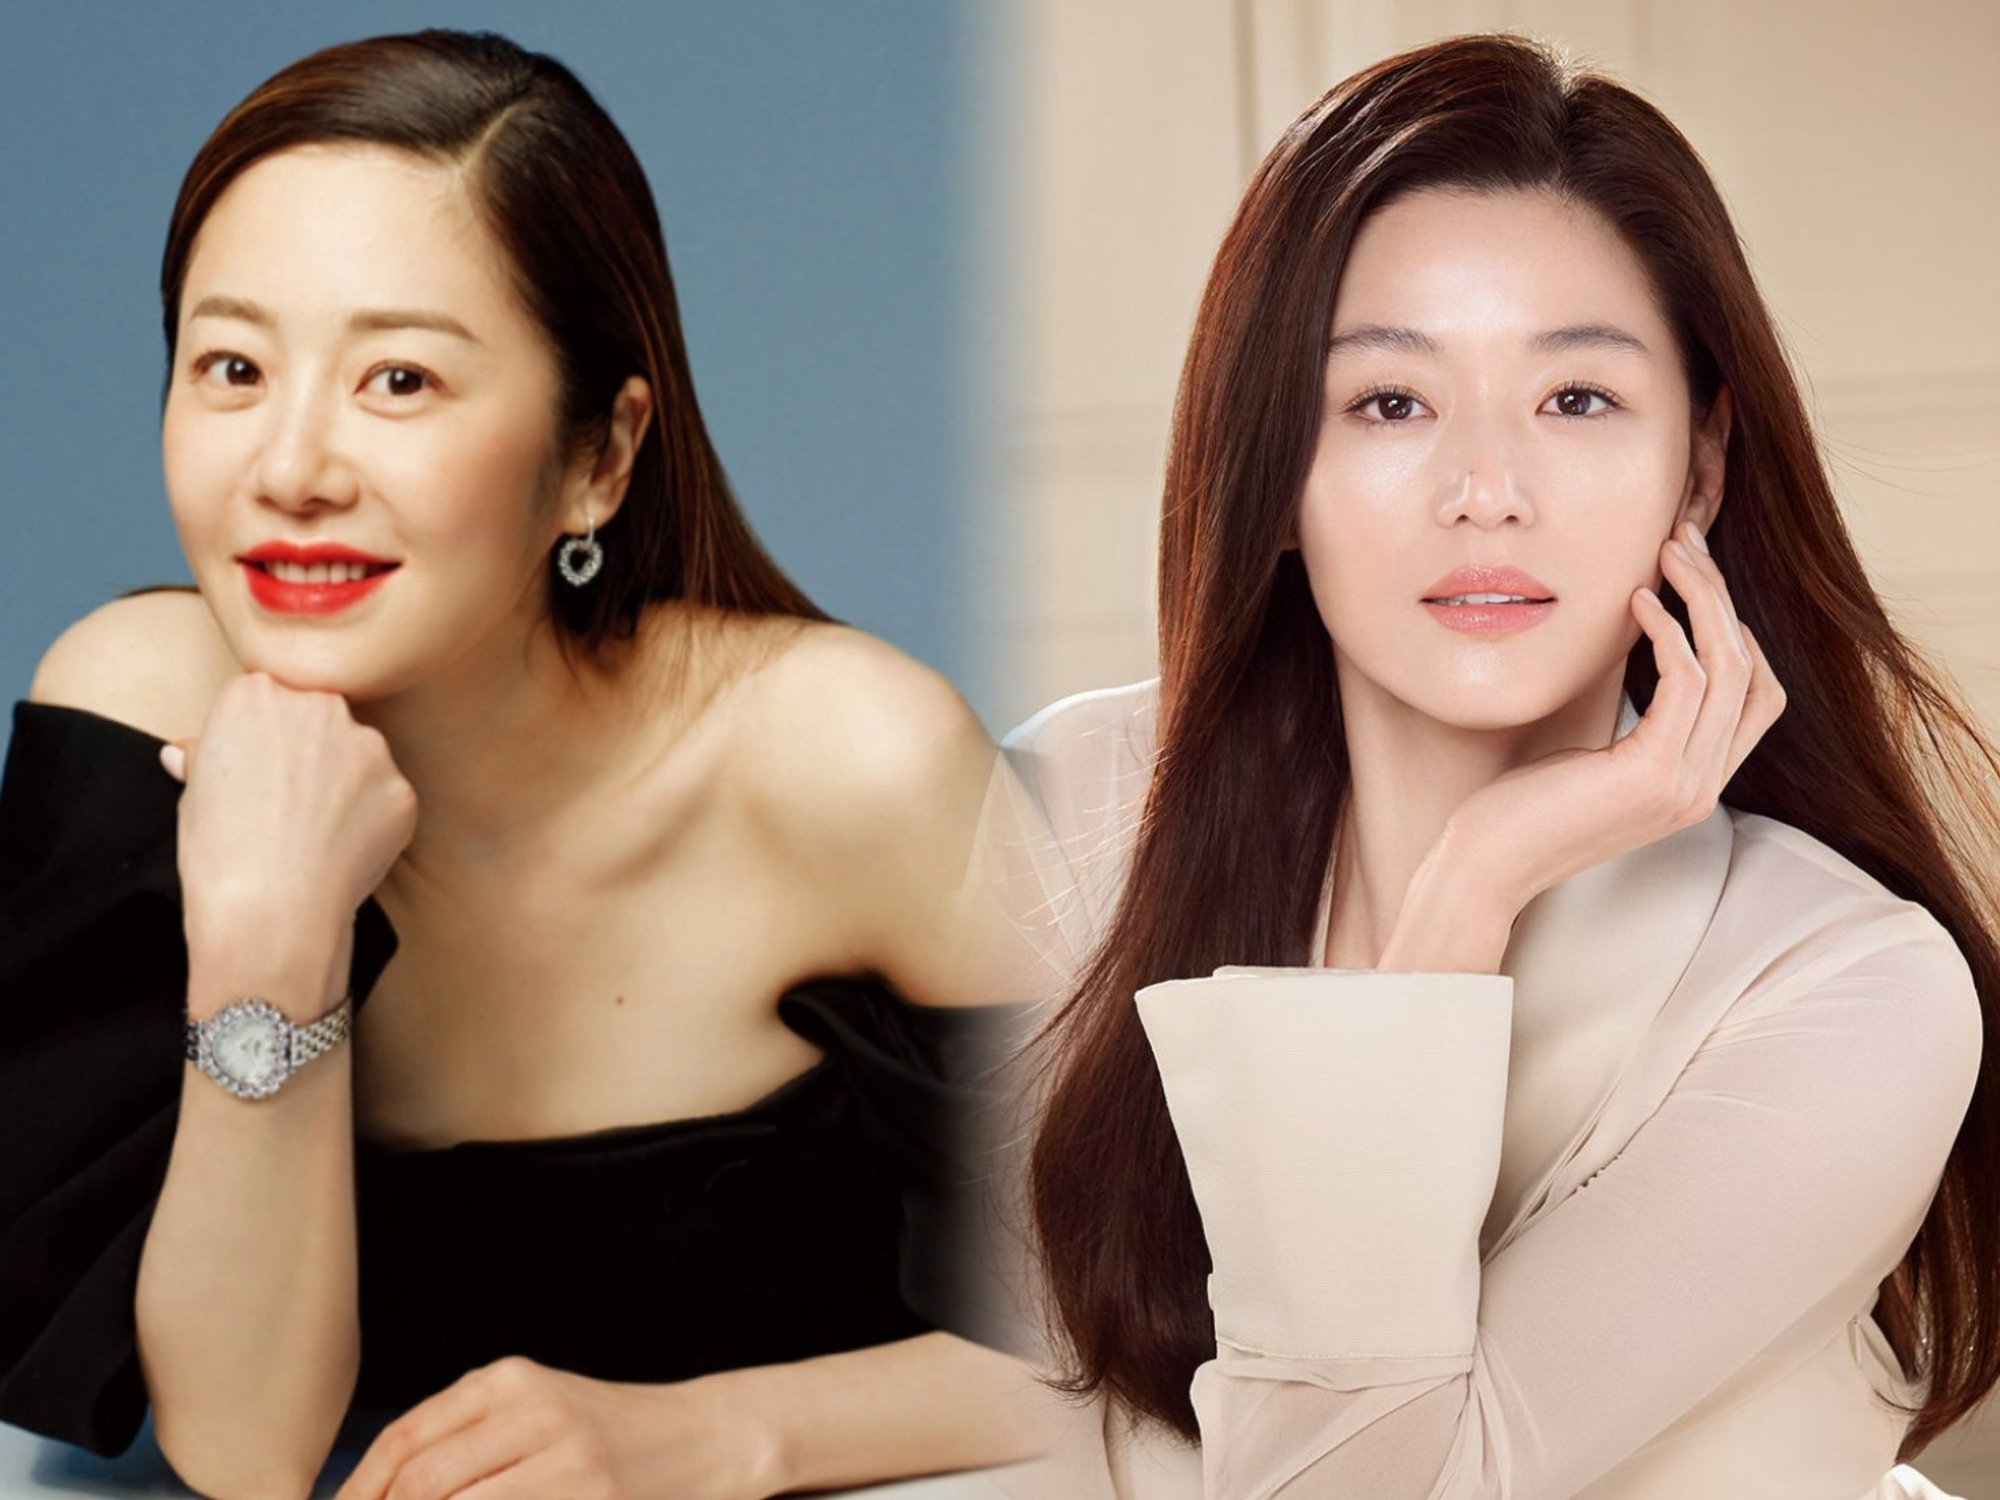 Cuộc sống “làm dâu hào môn” của 2 mỹ nhân hàng đầu Kbiz: Jun Ji Hyun sống như bà hoàng, Go Hyun Jung lấy lại hào quang sau khi thoát khỏi hôn nhân địa ngục - Ảnh 1.